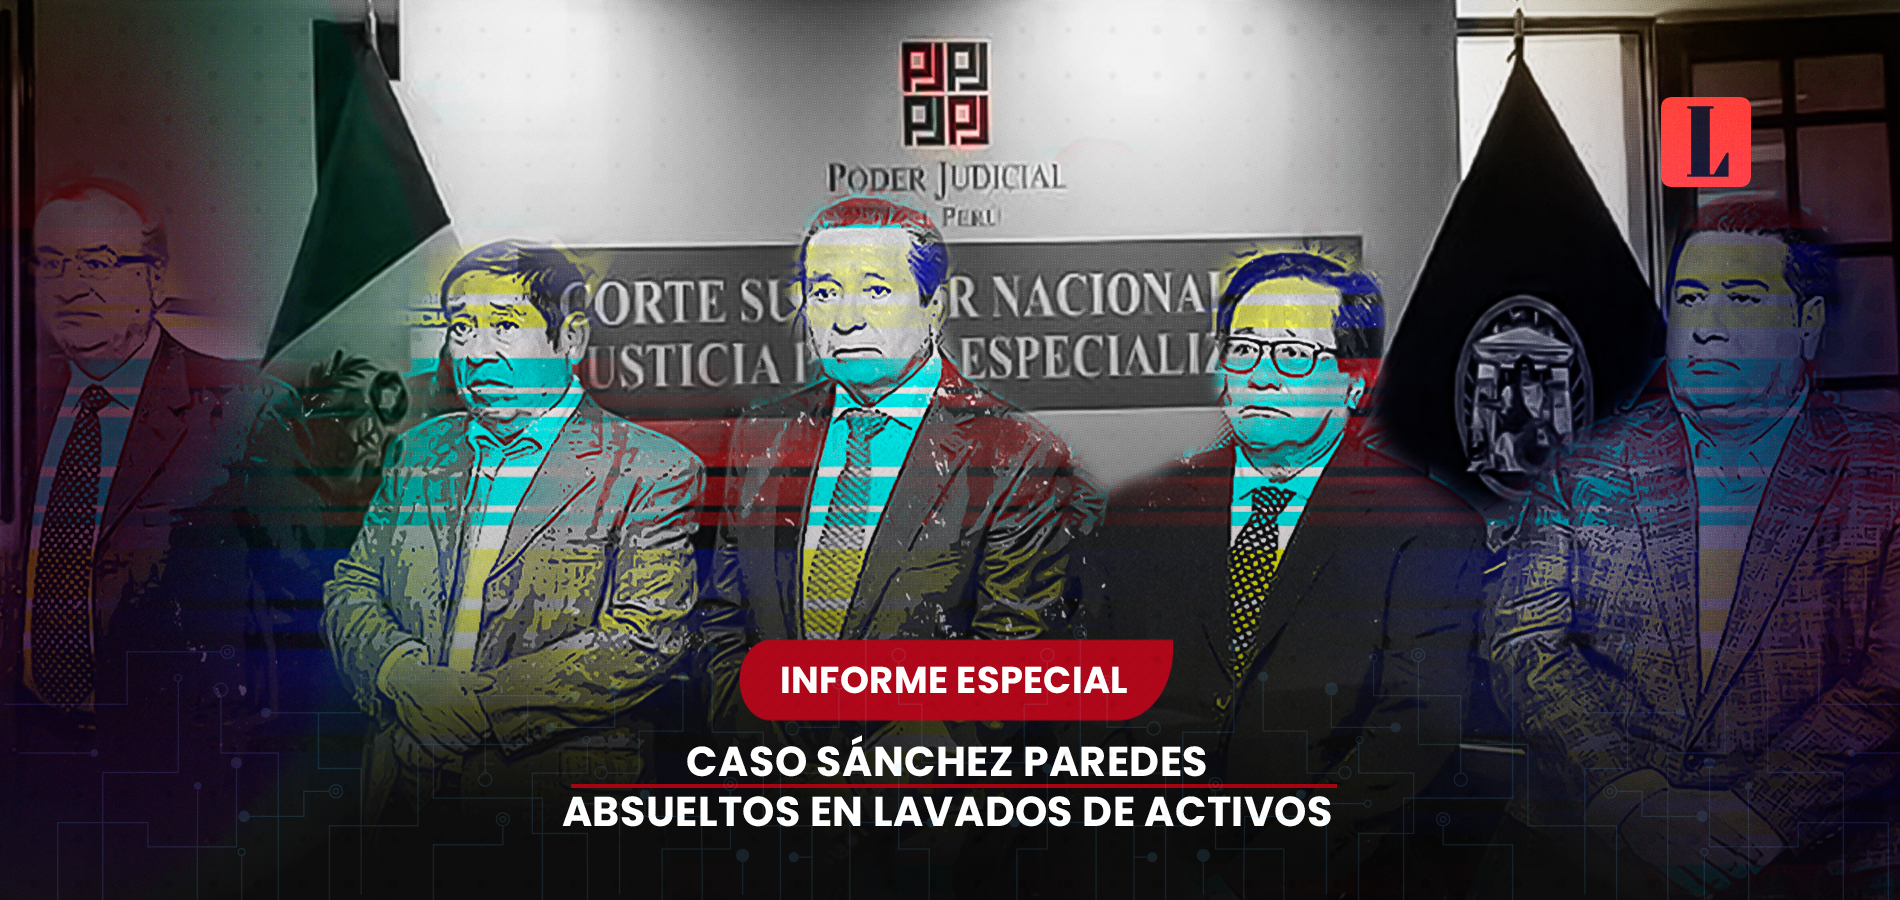 Todos los argumentos jurídicos del caso Sánchez Paredes: PJ absuelve por lavado de activos